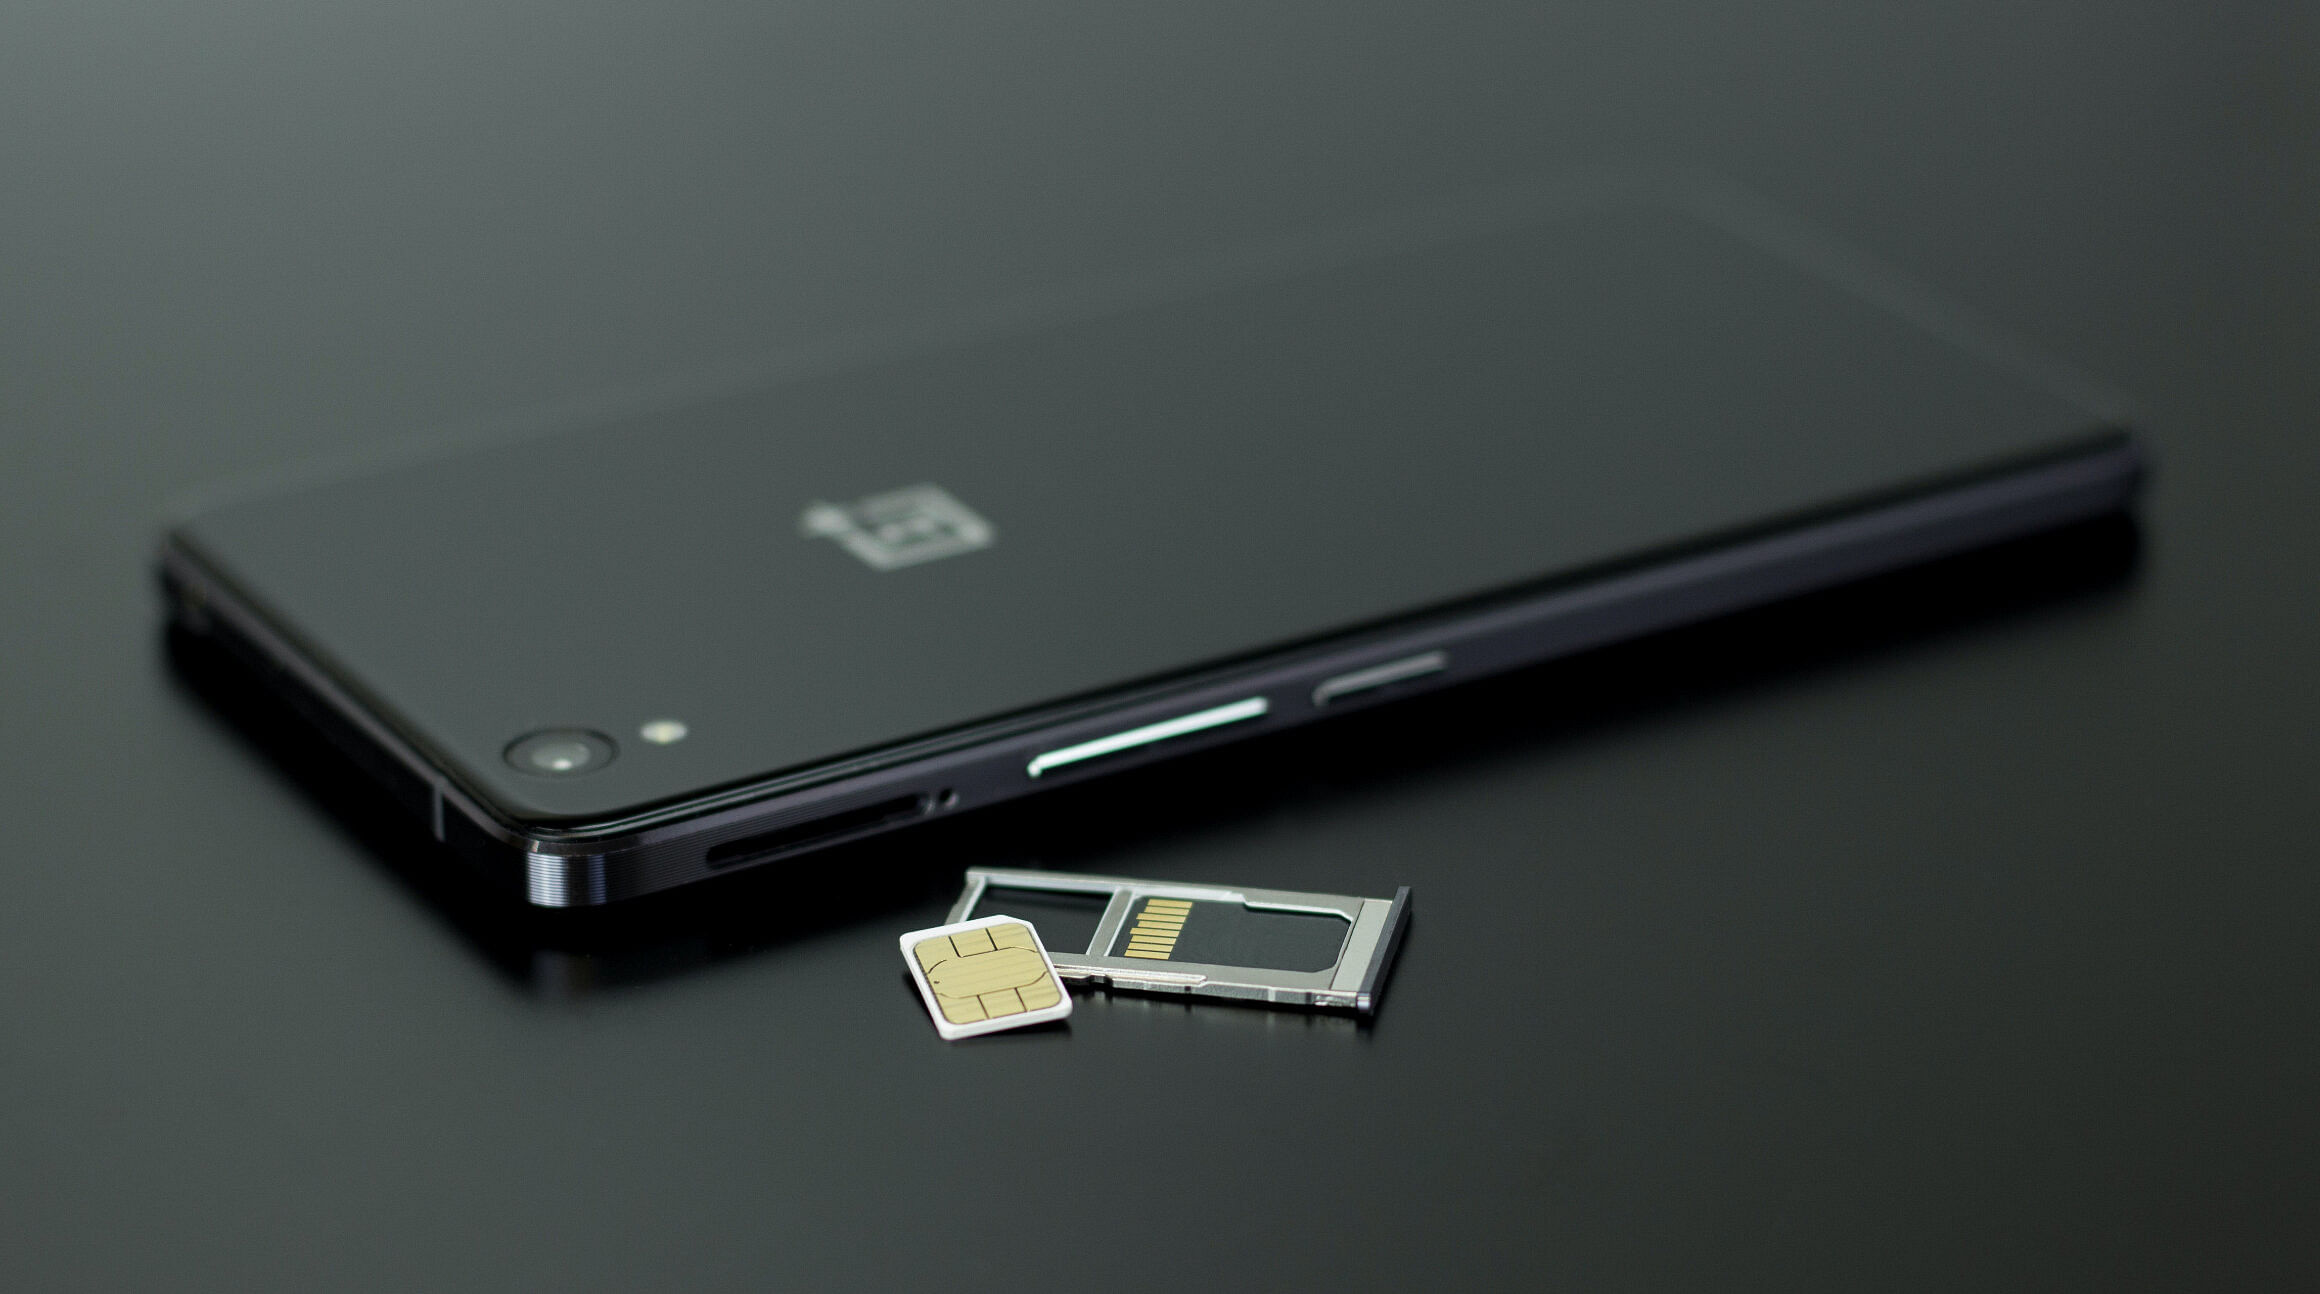 Karta SIM i tacka na kartę SIM obok smartfona